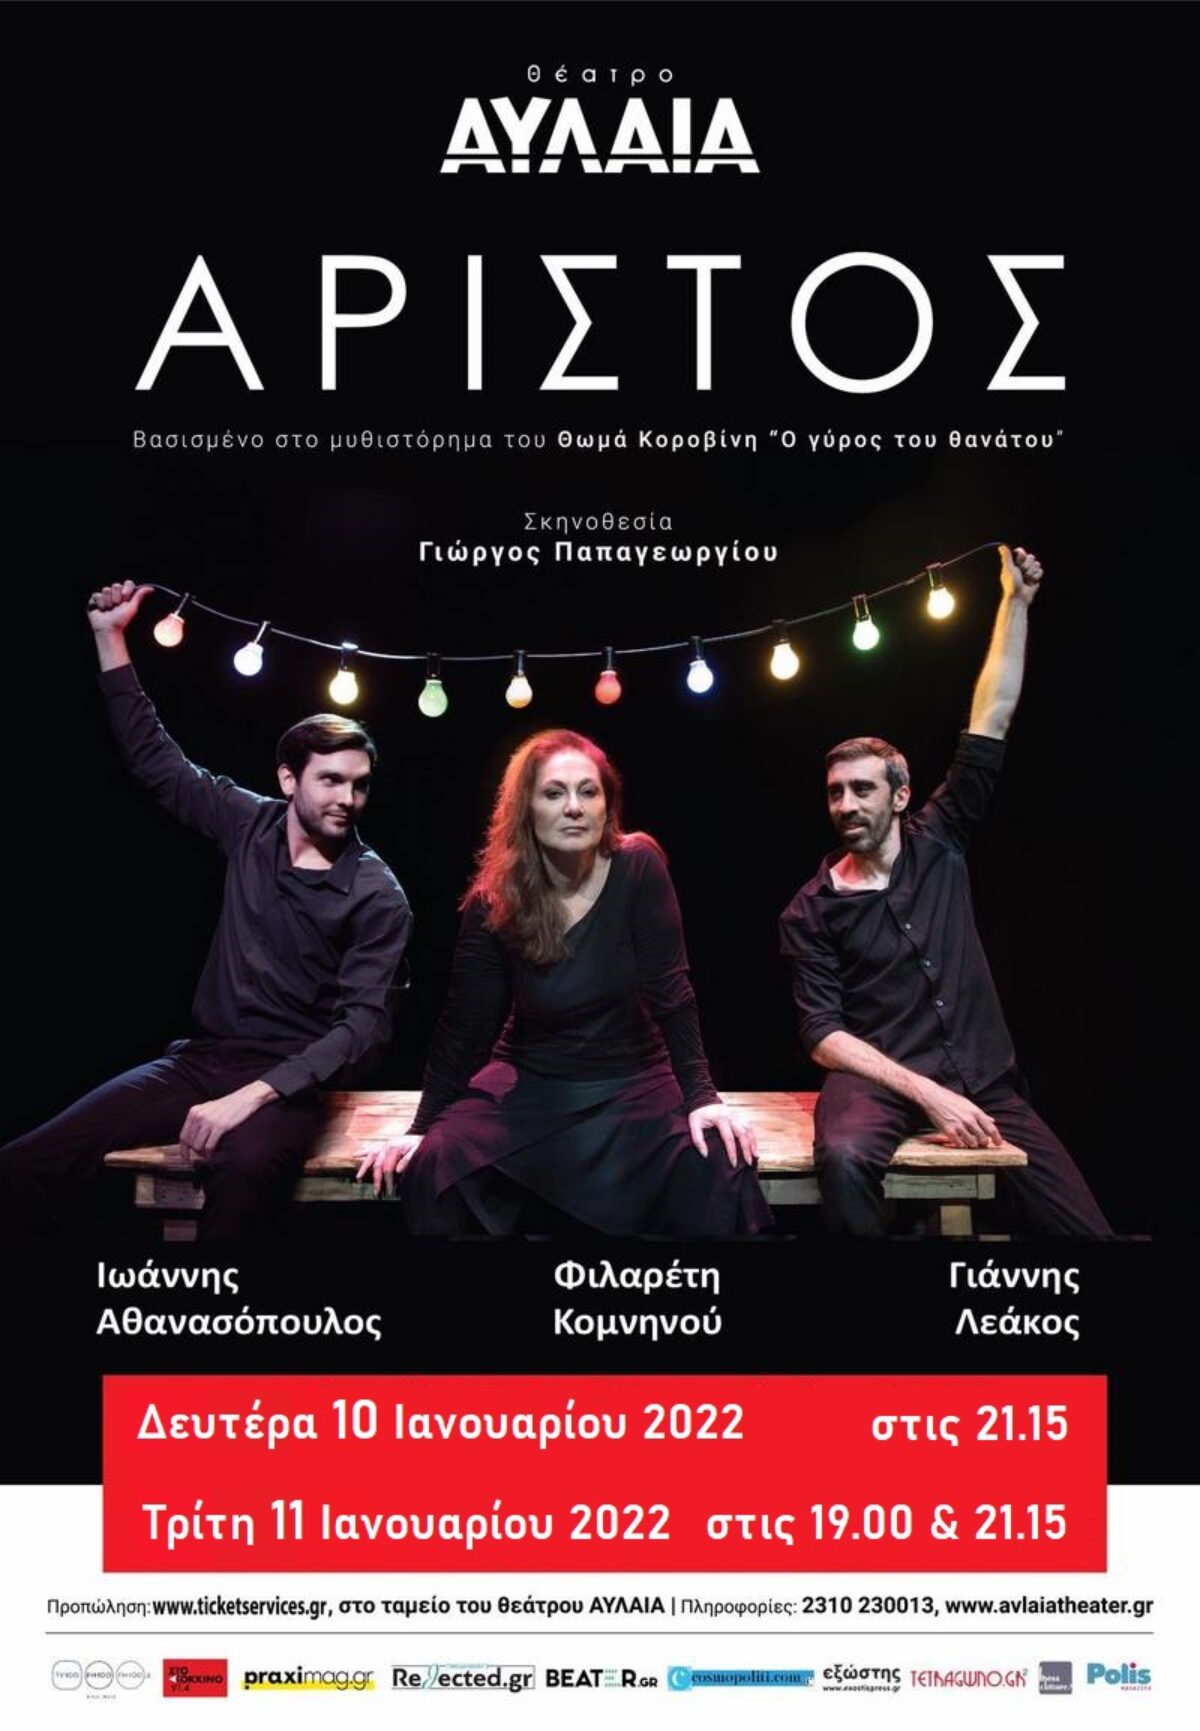 “Αρίστος” – Μία παράσταση βασισμένη στο μυθιστόρημα του Θωμά Κοροβίνη “Ο Γύρος του Θανάτου” Επιστρέφει 10 & 11 Ιανουαρίου 2022 Στο Θέατρο Αυλαία